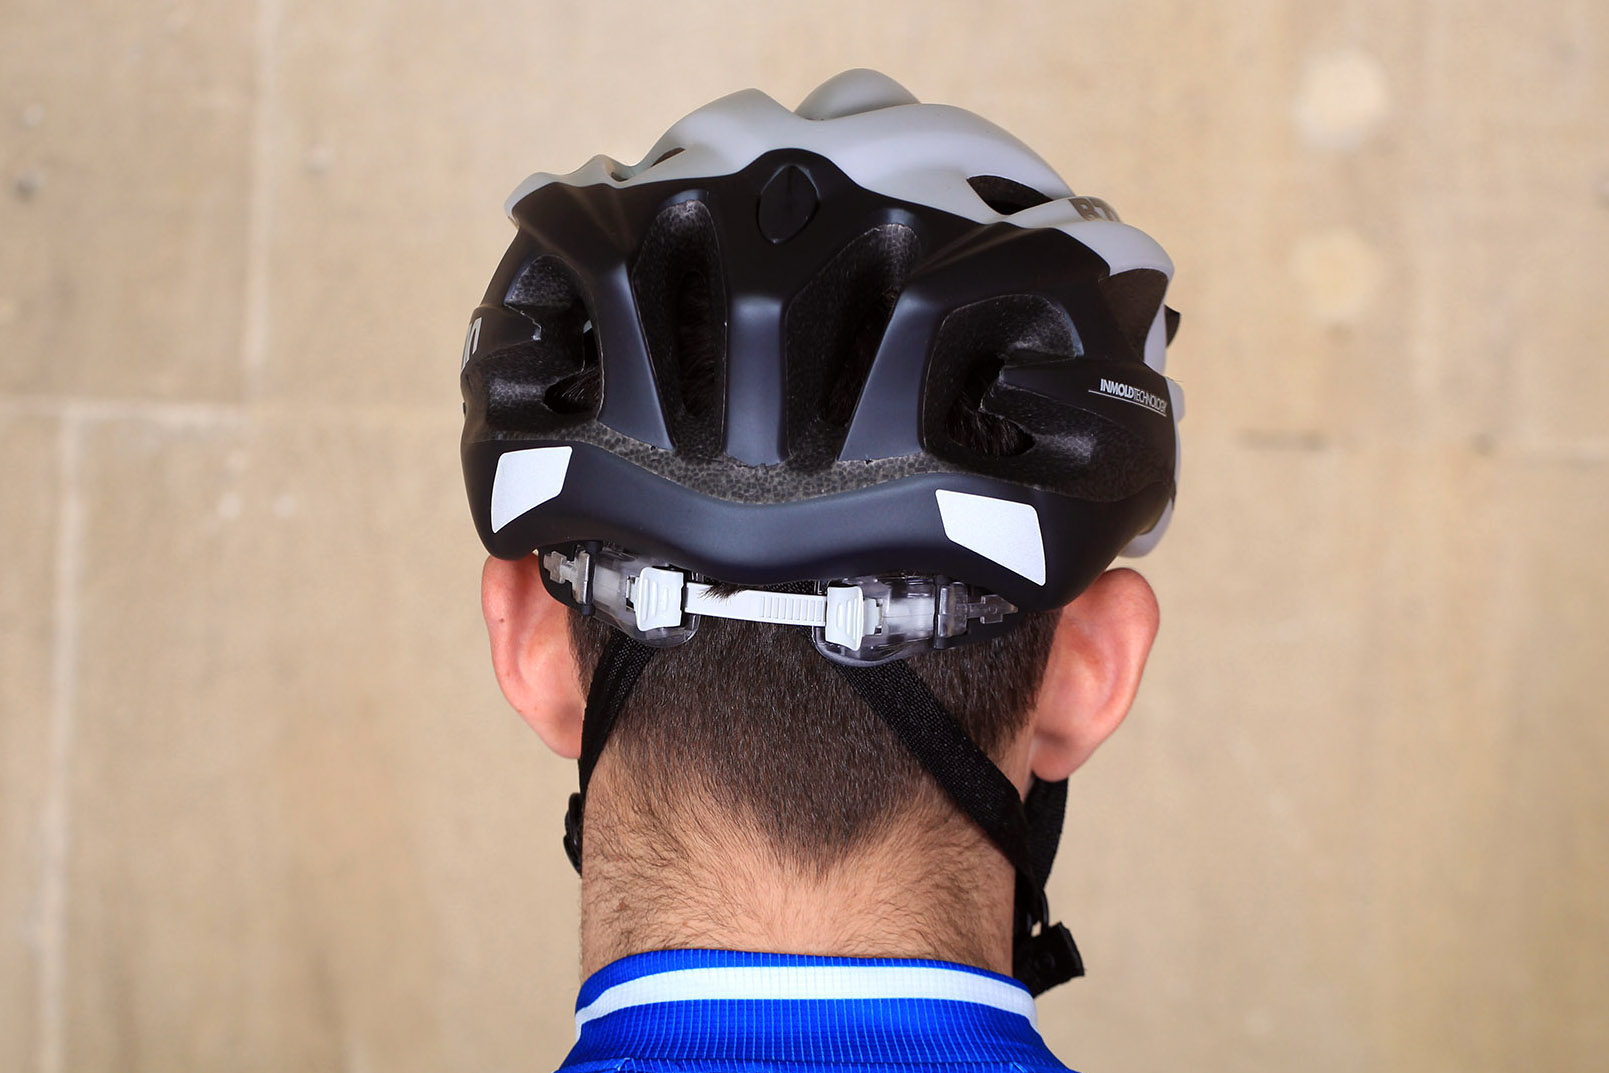 BTwin 700 Road Cycling Helmet | road.cc